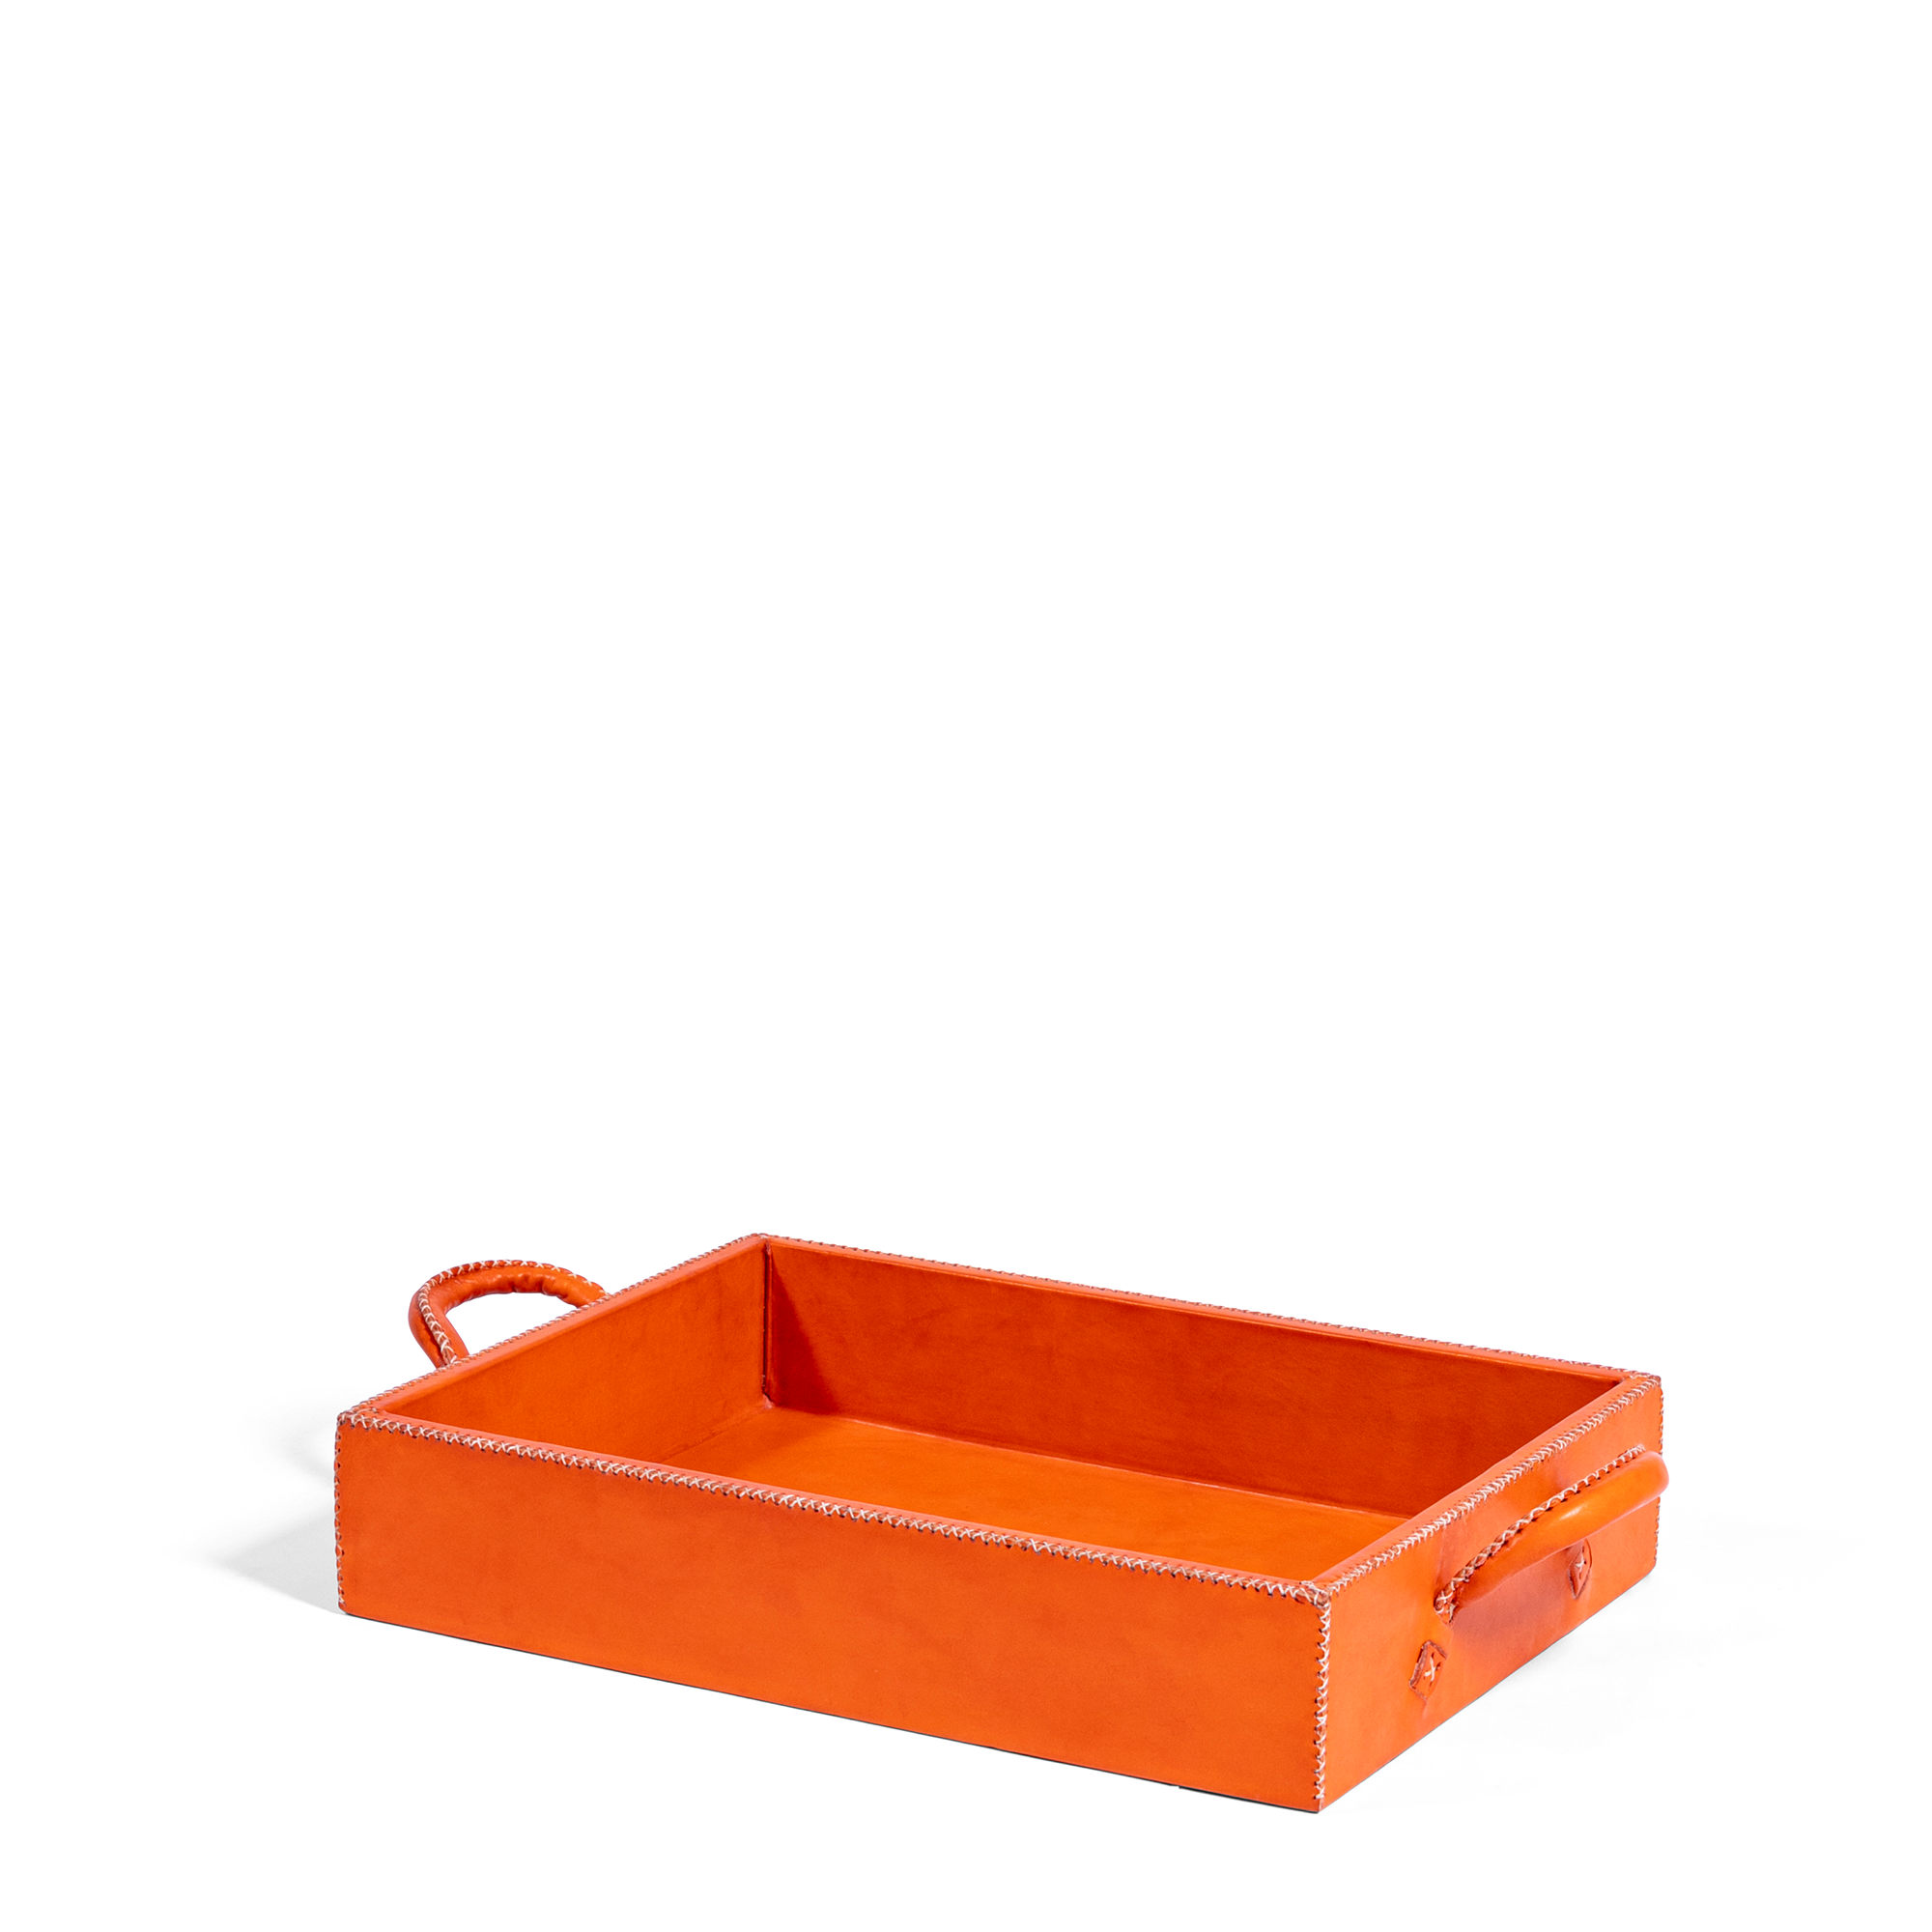 Handled Leather Tray - Orange